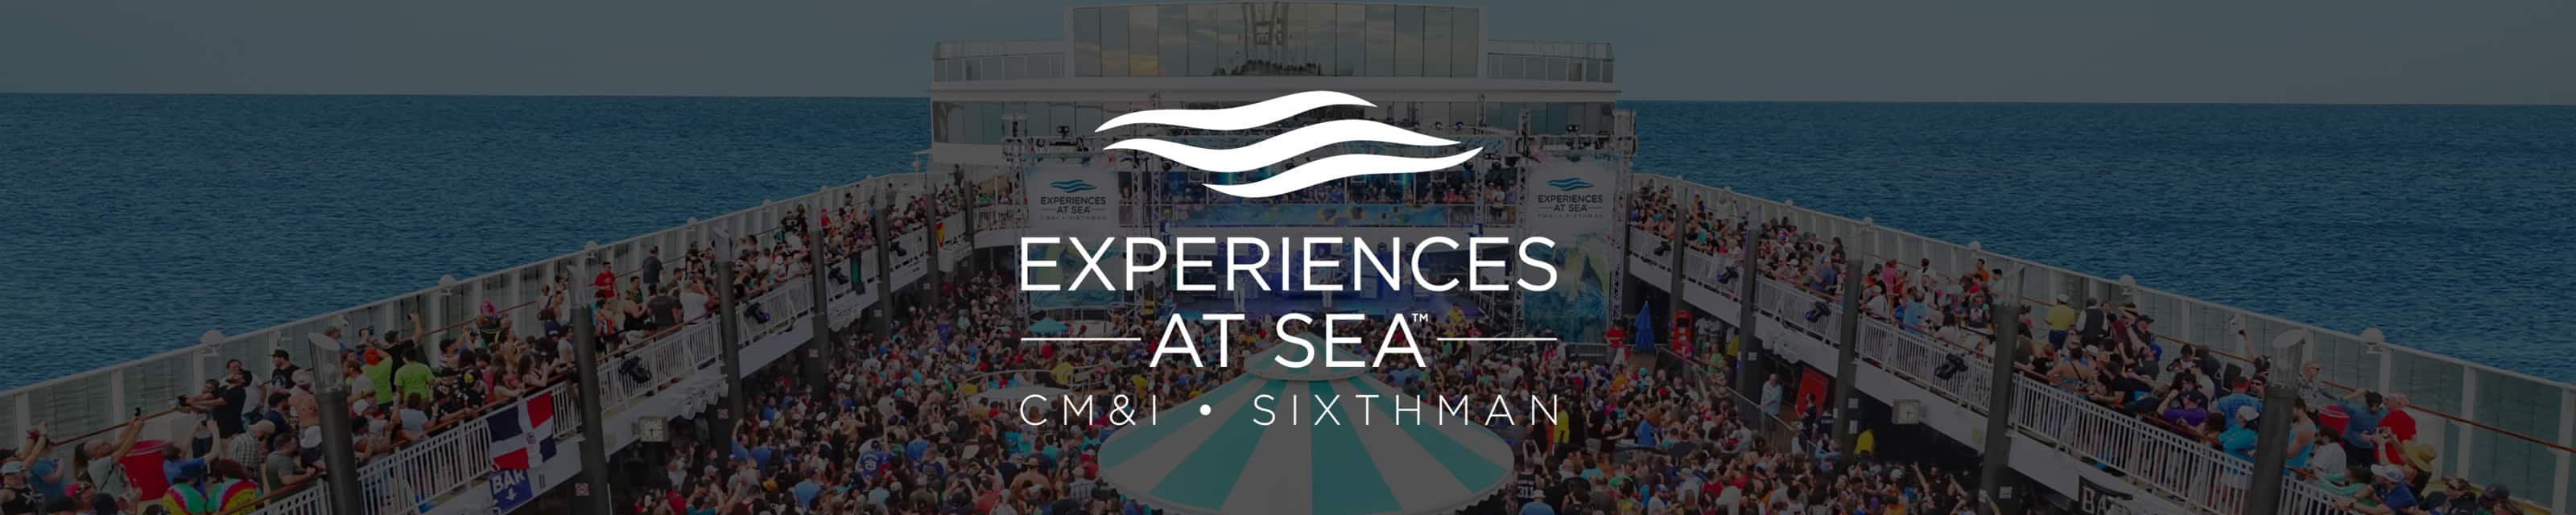 Esperienze in mare (CM&I)